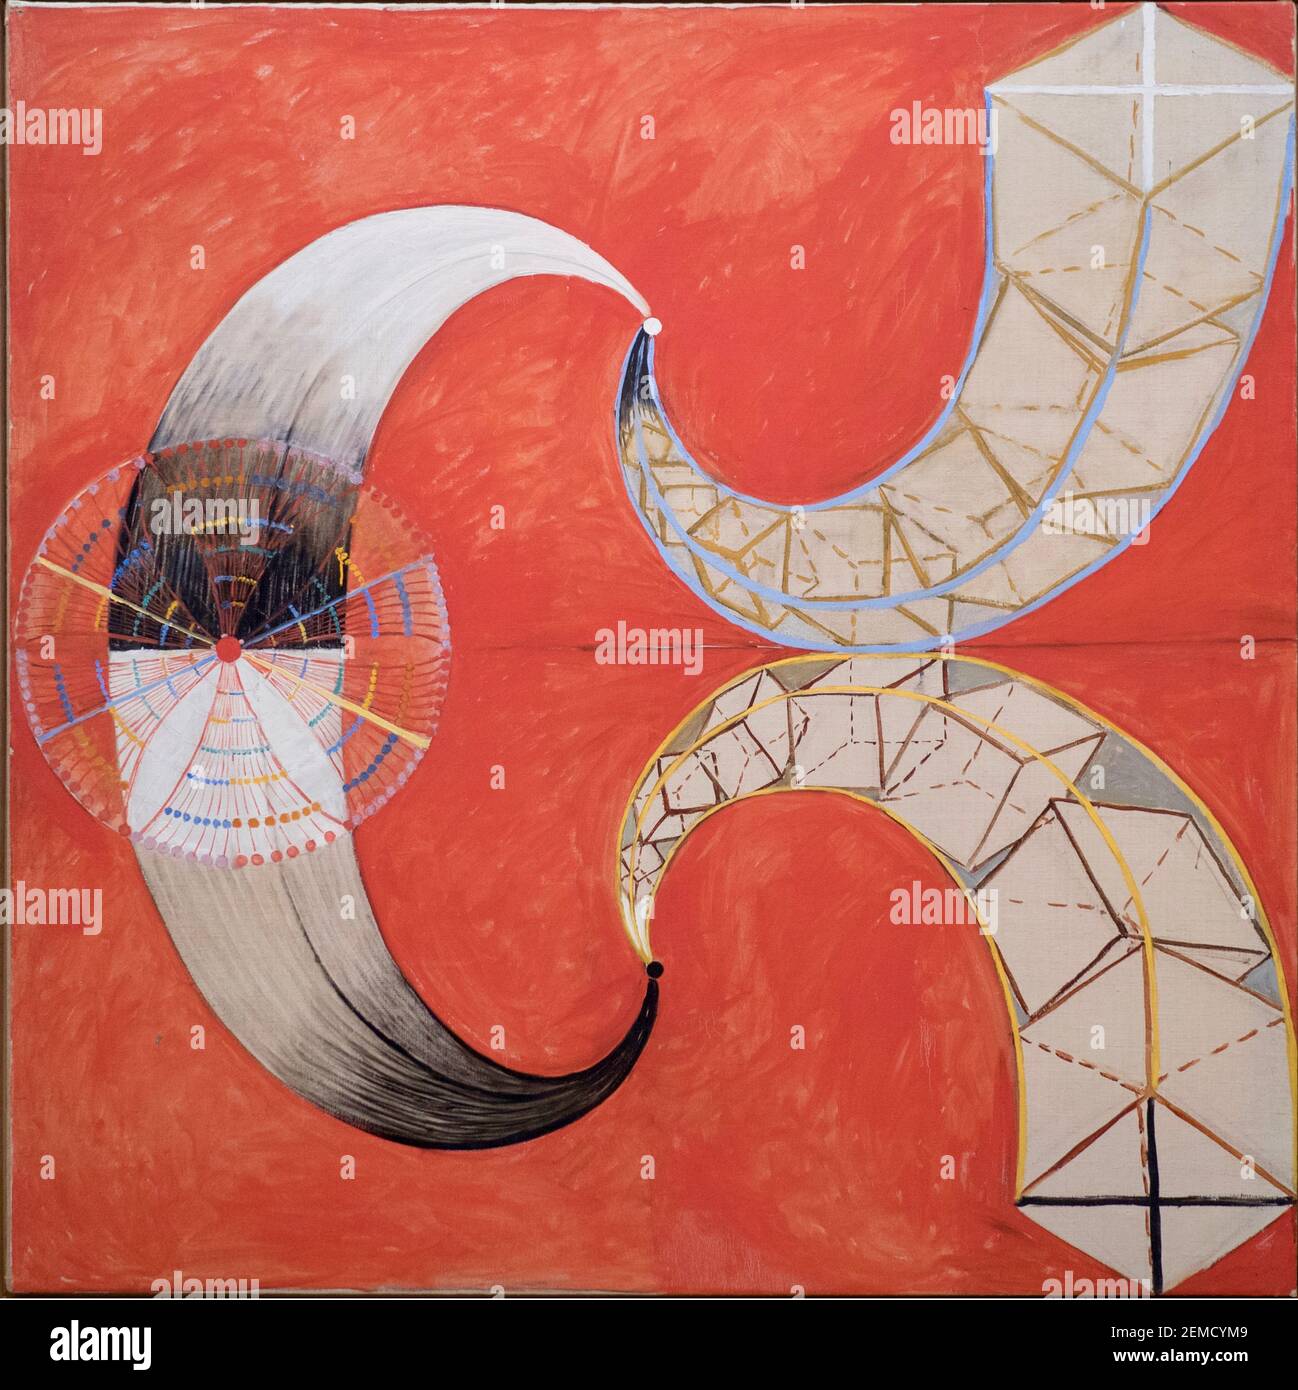 The Swan No 9 von Hilma af Klint - Abstraktes Kunstwerk des schwedischen Künstler-Mystikers. Wirbelt und wirbelt auf einem roten Hintergrund. Stockfoto